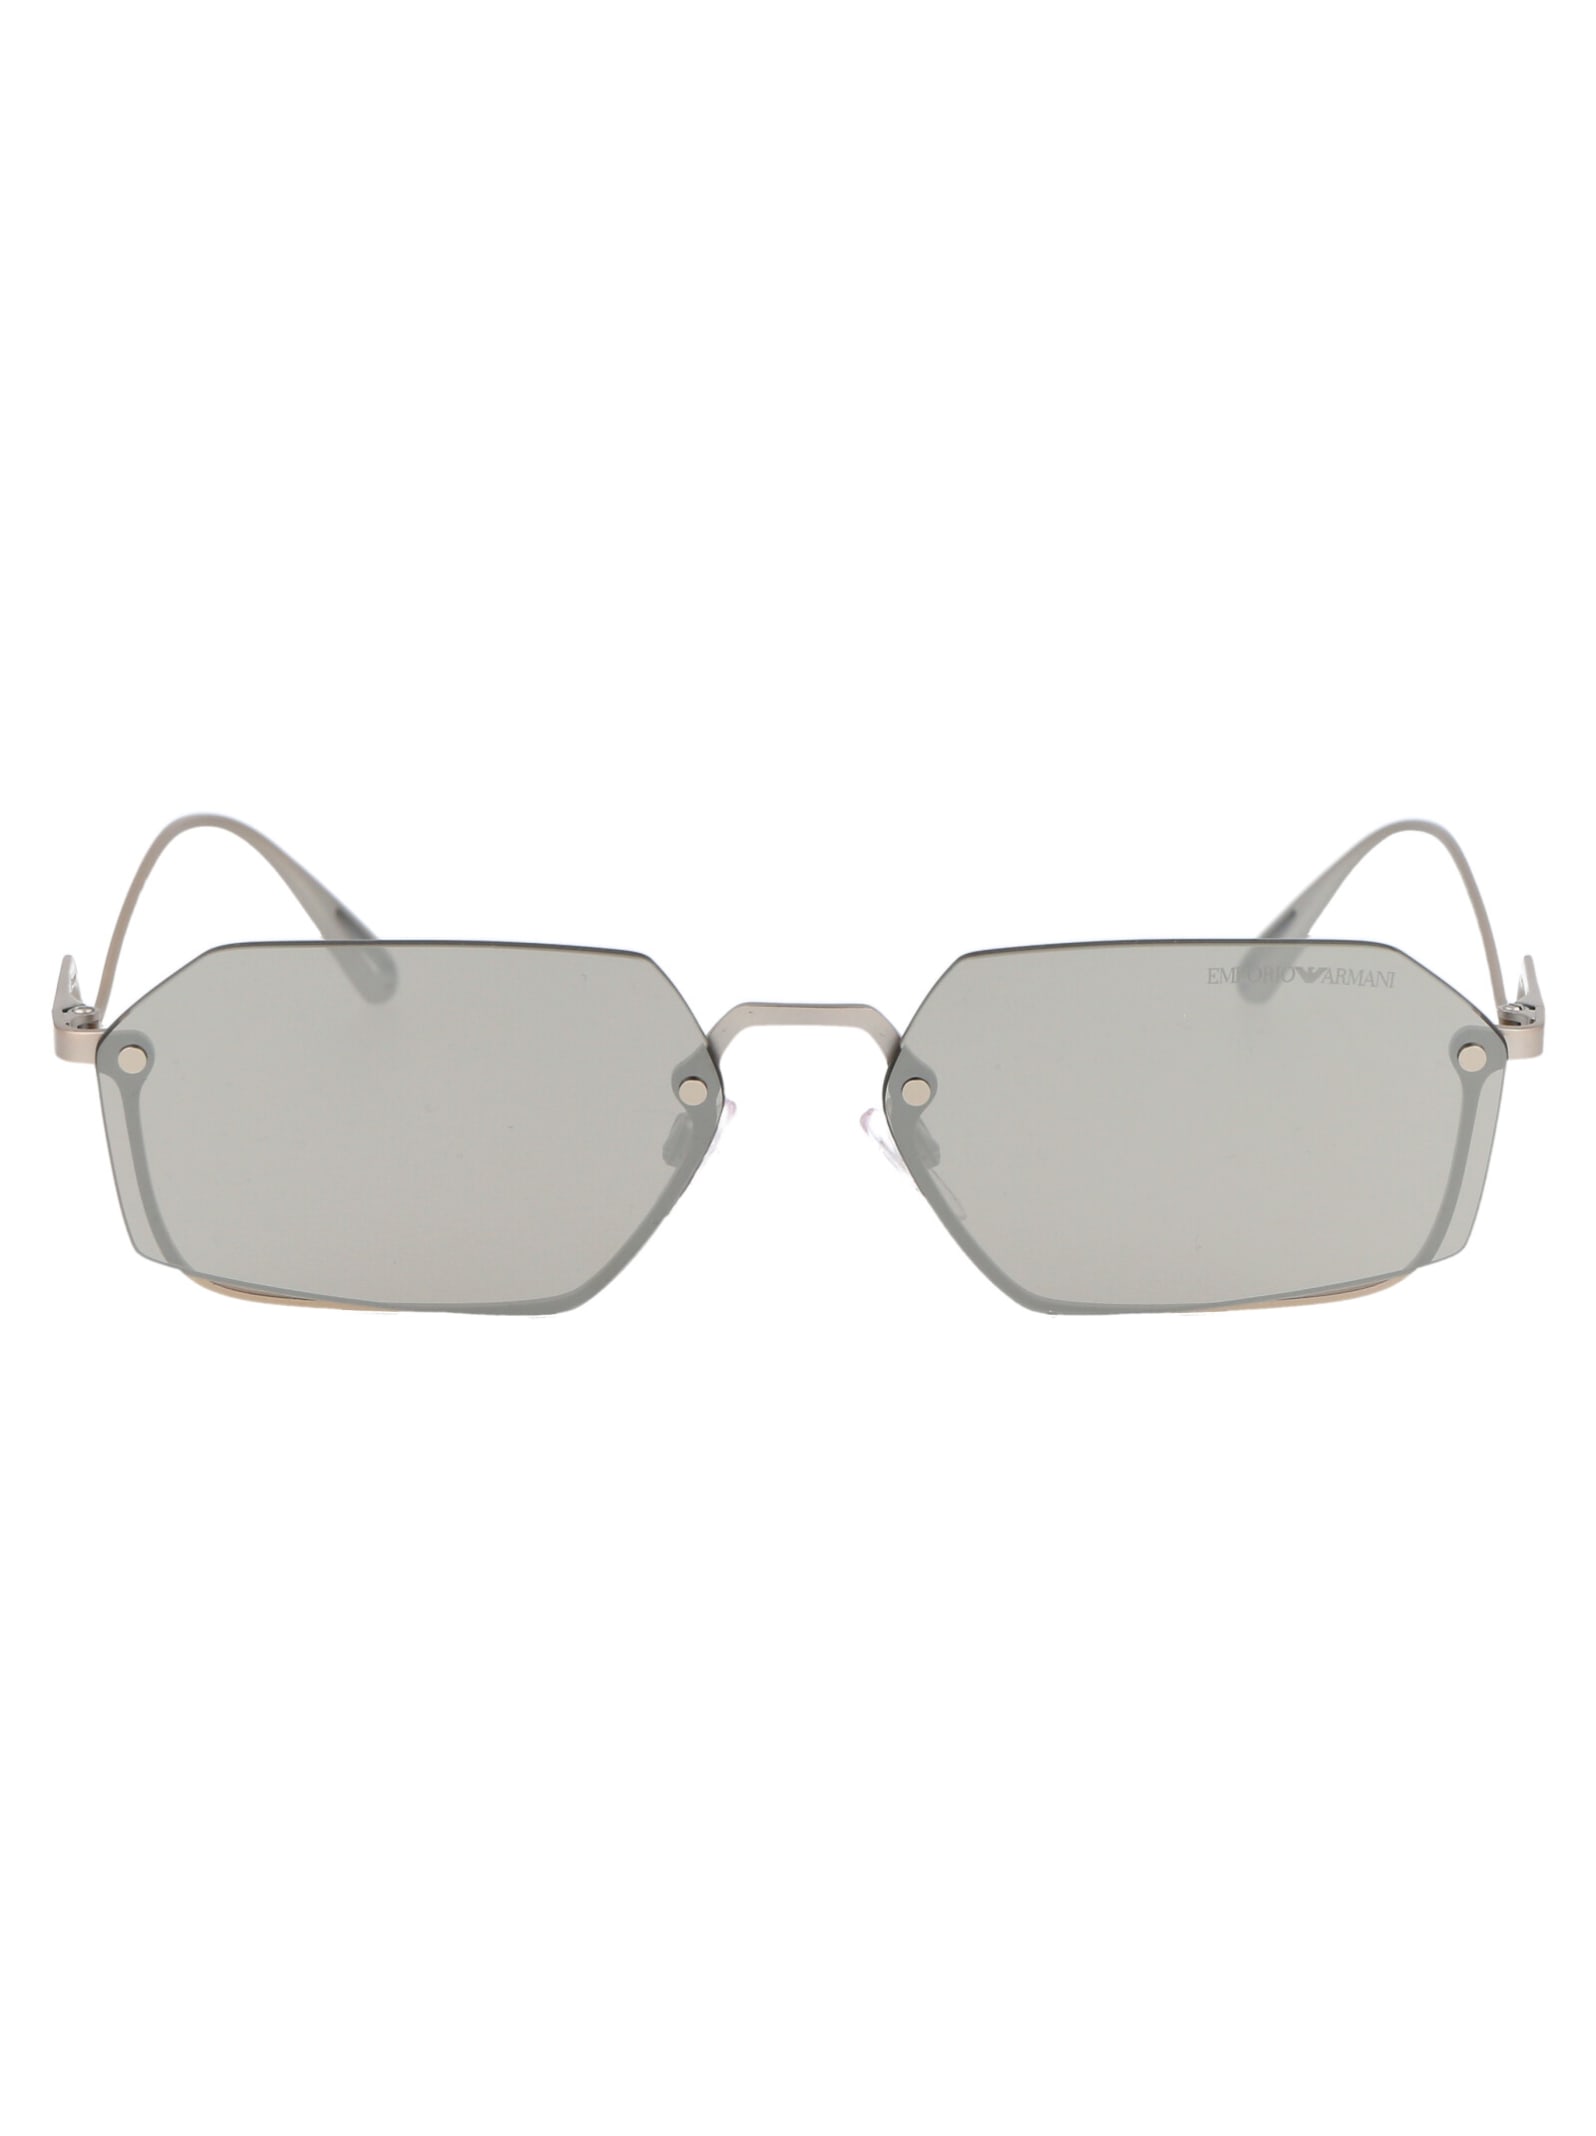 Emporio Armani 0ea2136 Sunglasses In 30456g Matte Silver